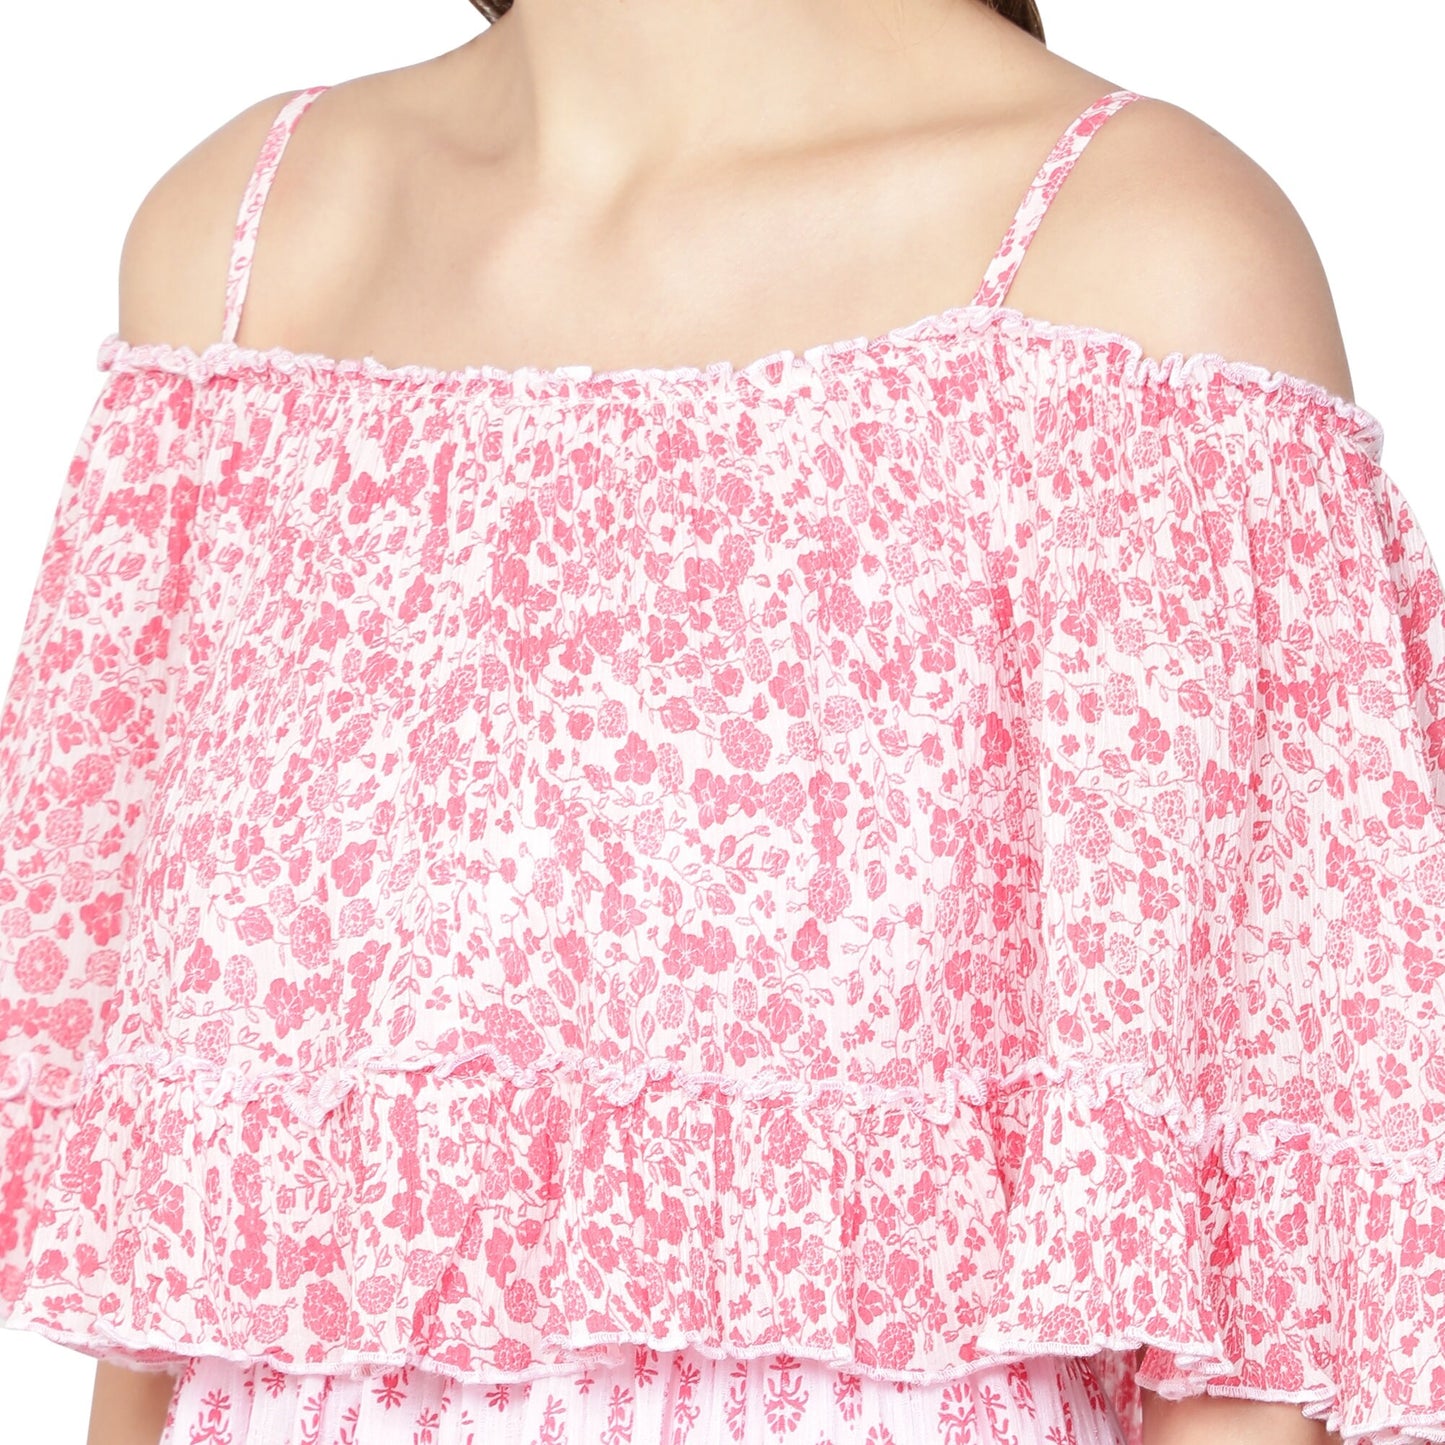 Isabella dress off shoulder pink floral print